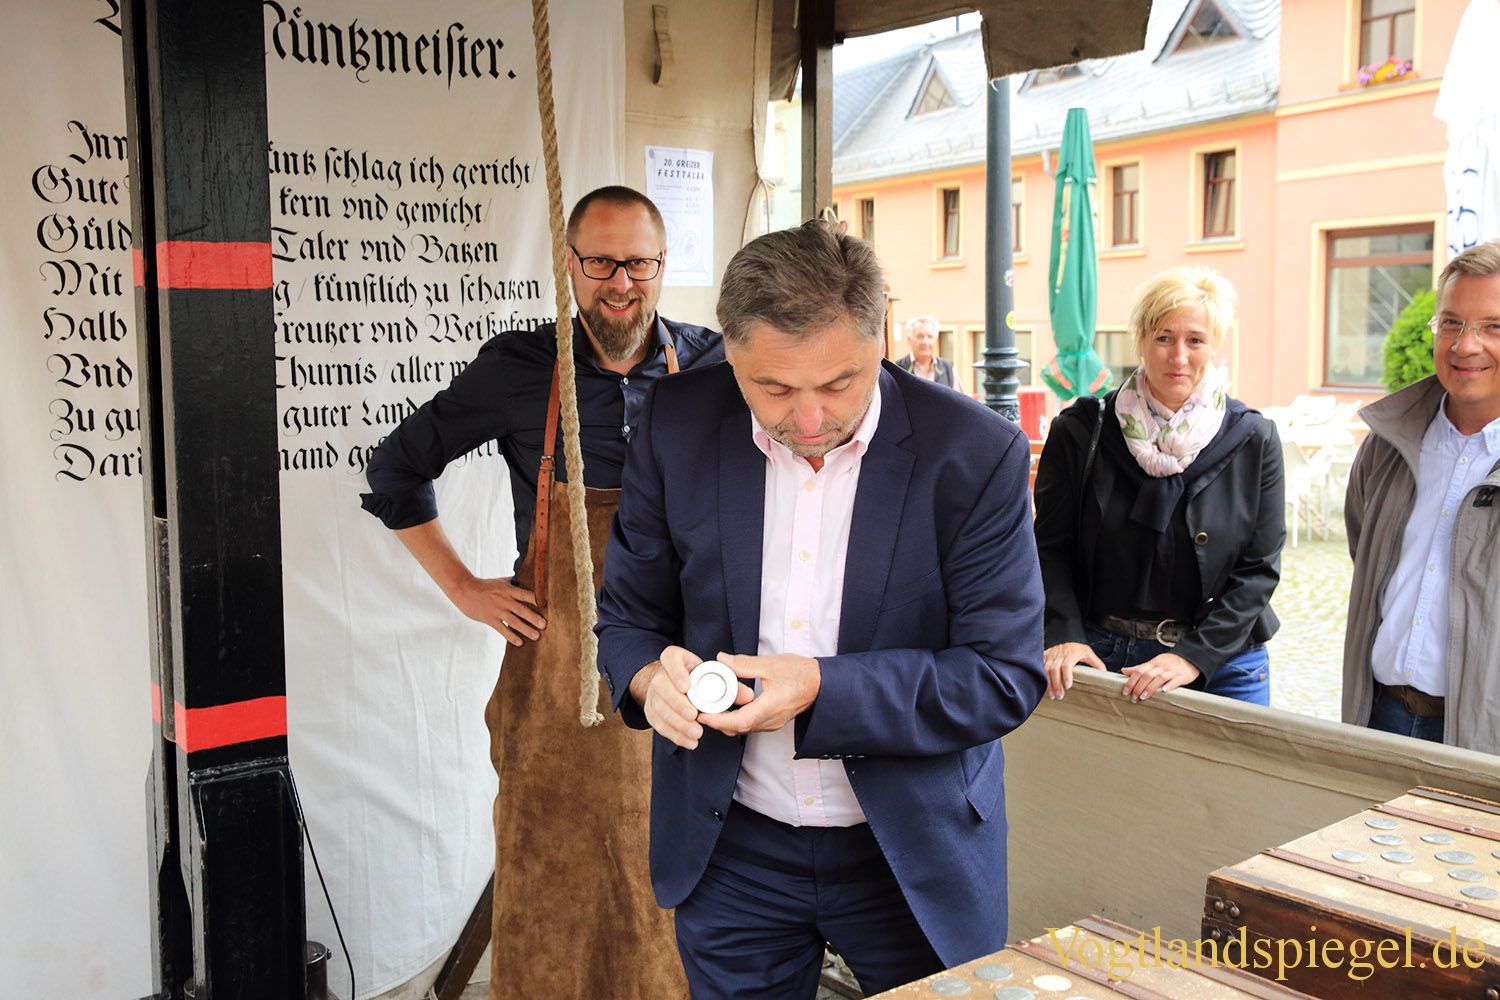 Anprägen des 20. Greizer Festtalers durch den Bürgermeister der Stadt Greiz, Gerd Grüner